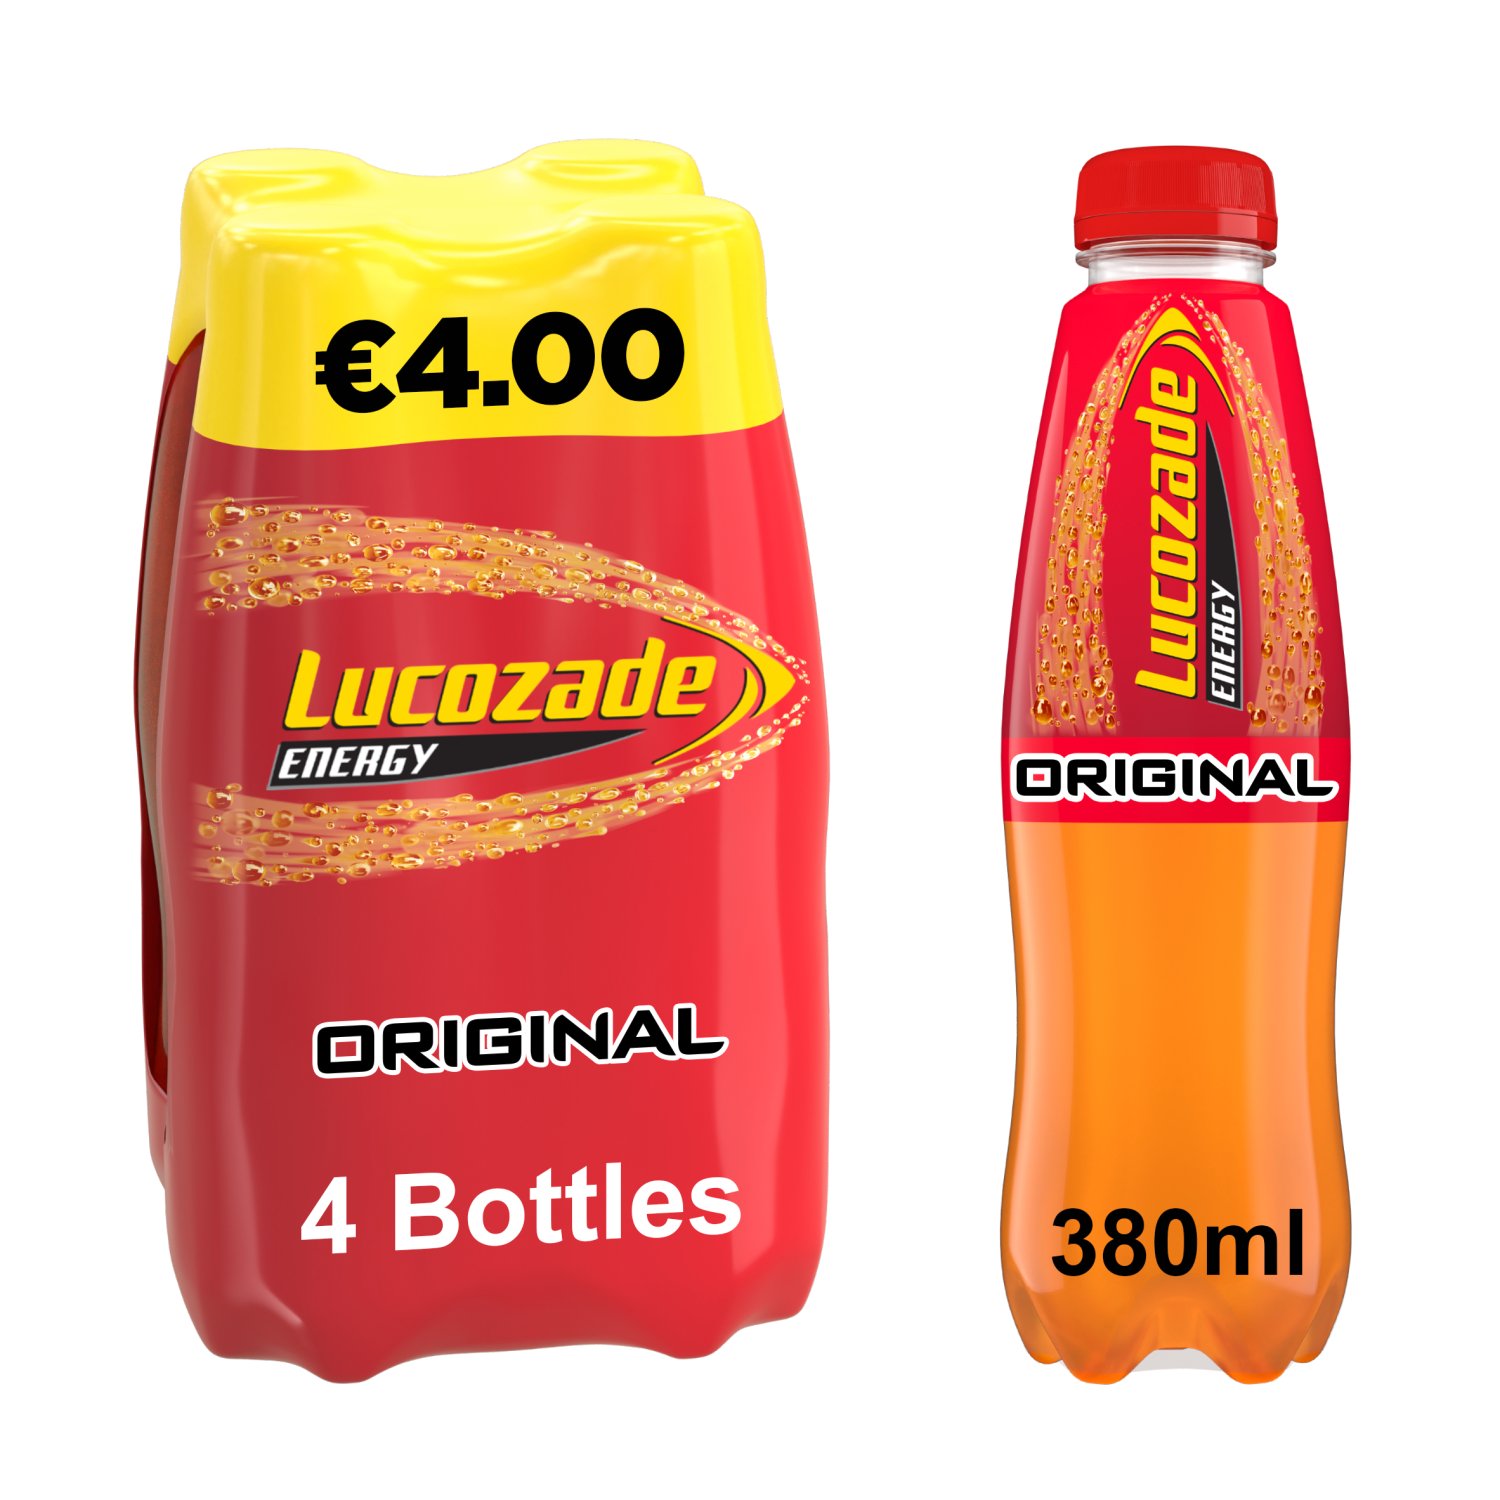 Lucozade Energy Original Bottles 4 Pack (380 ml)